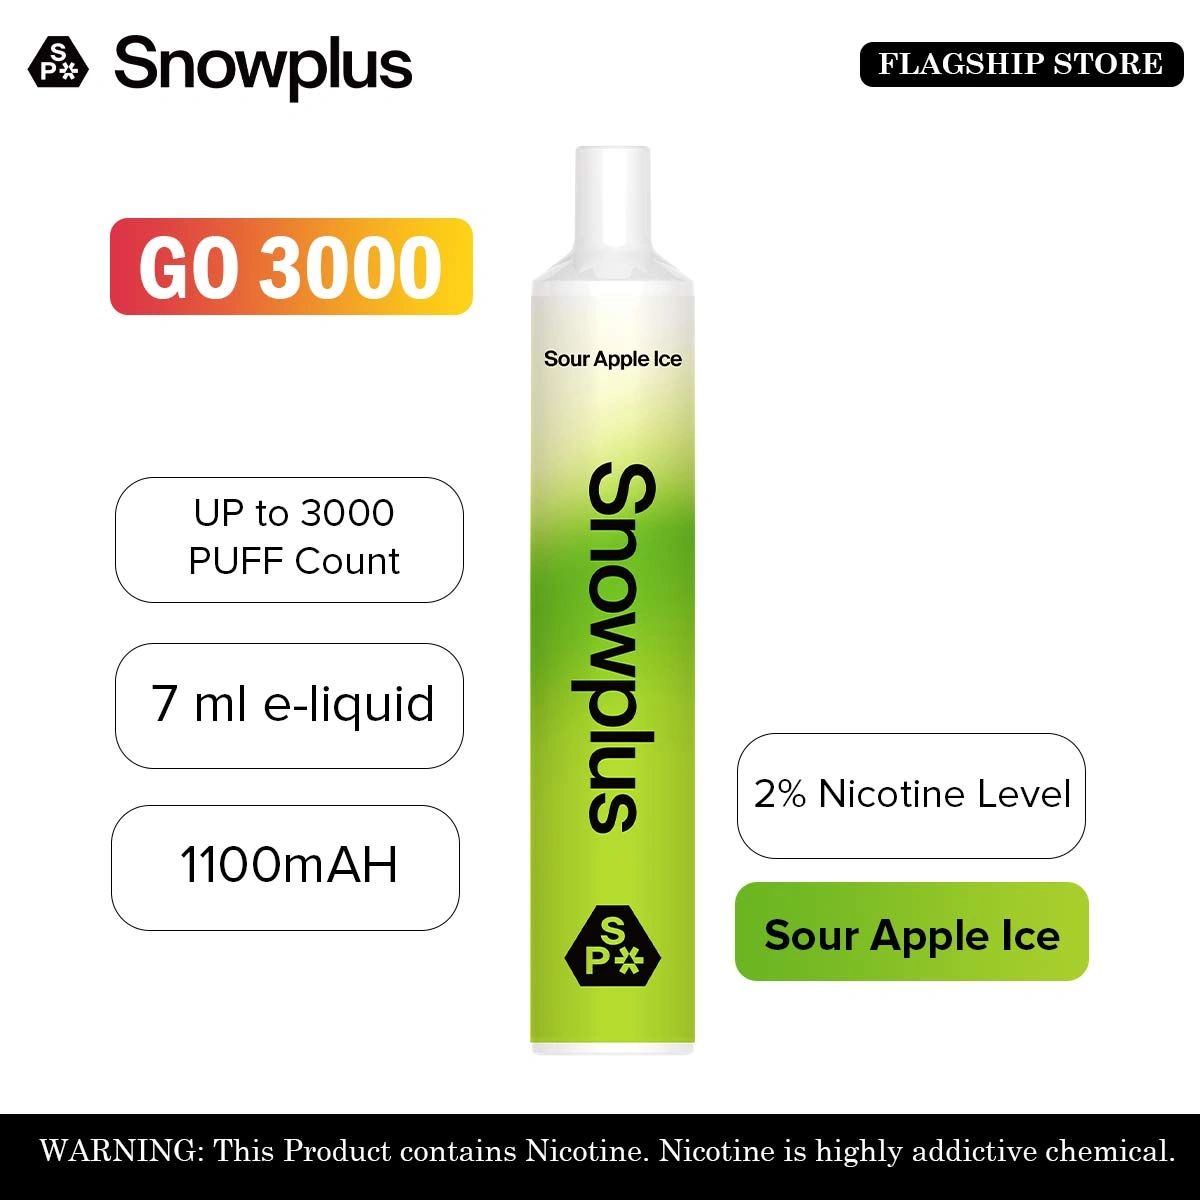 Snowplus GO 3000 Sour Apple Ice (2%) Disposable Smart Vape Pod